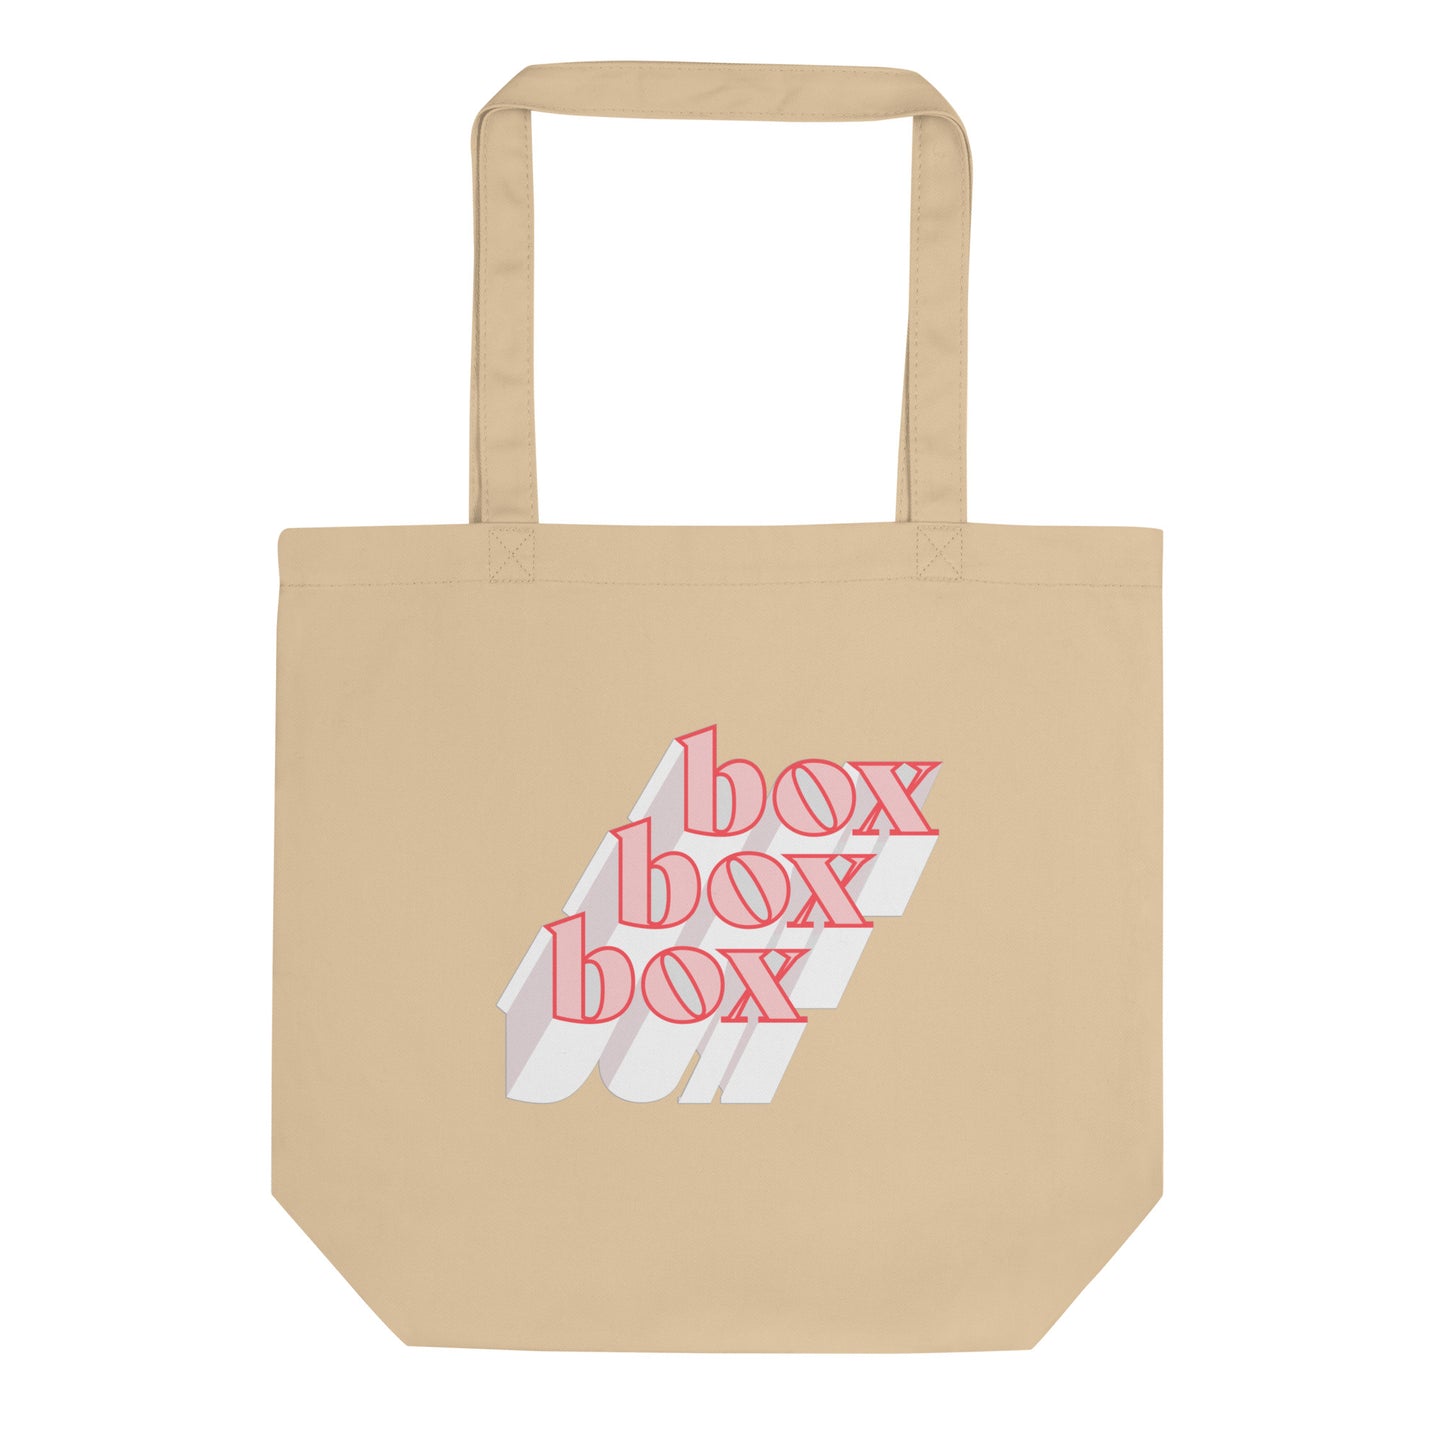 Box Box Box Tote Bag